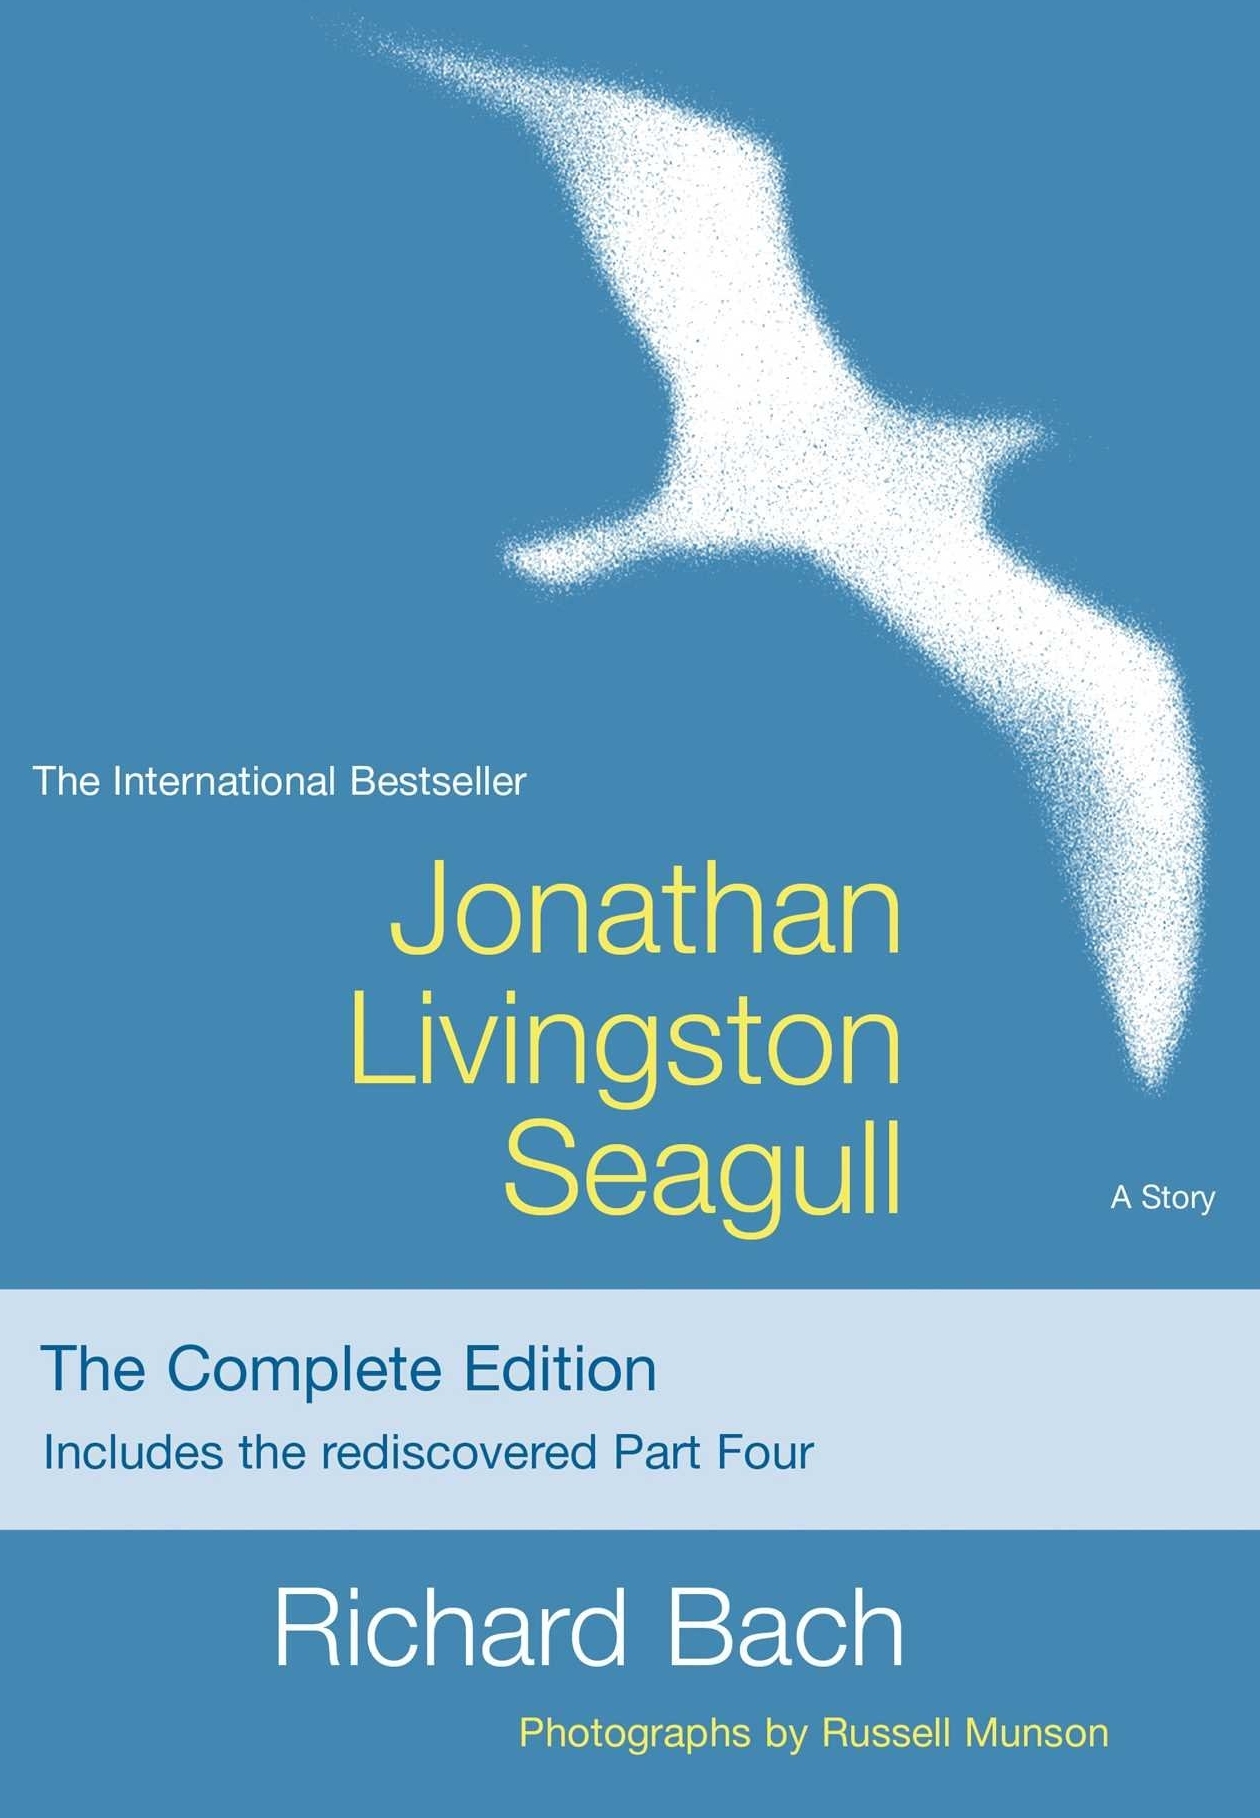 jonathan livingston seagull_square.jpg